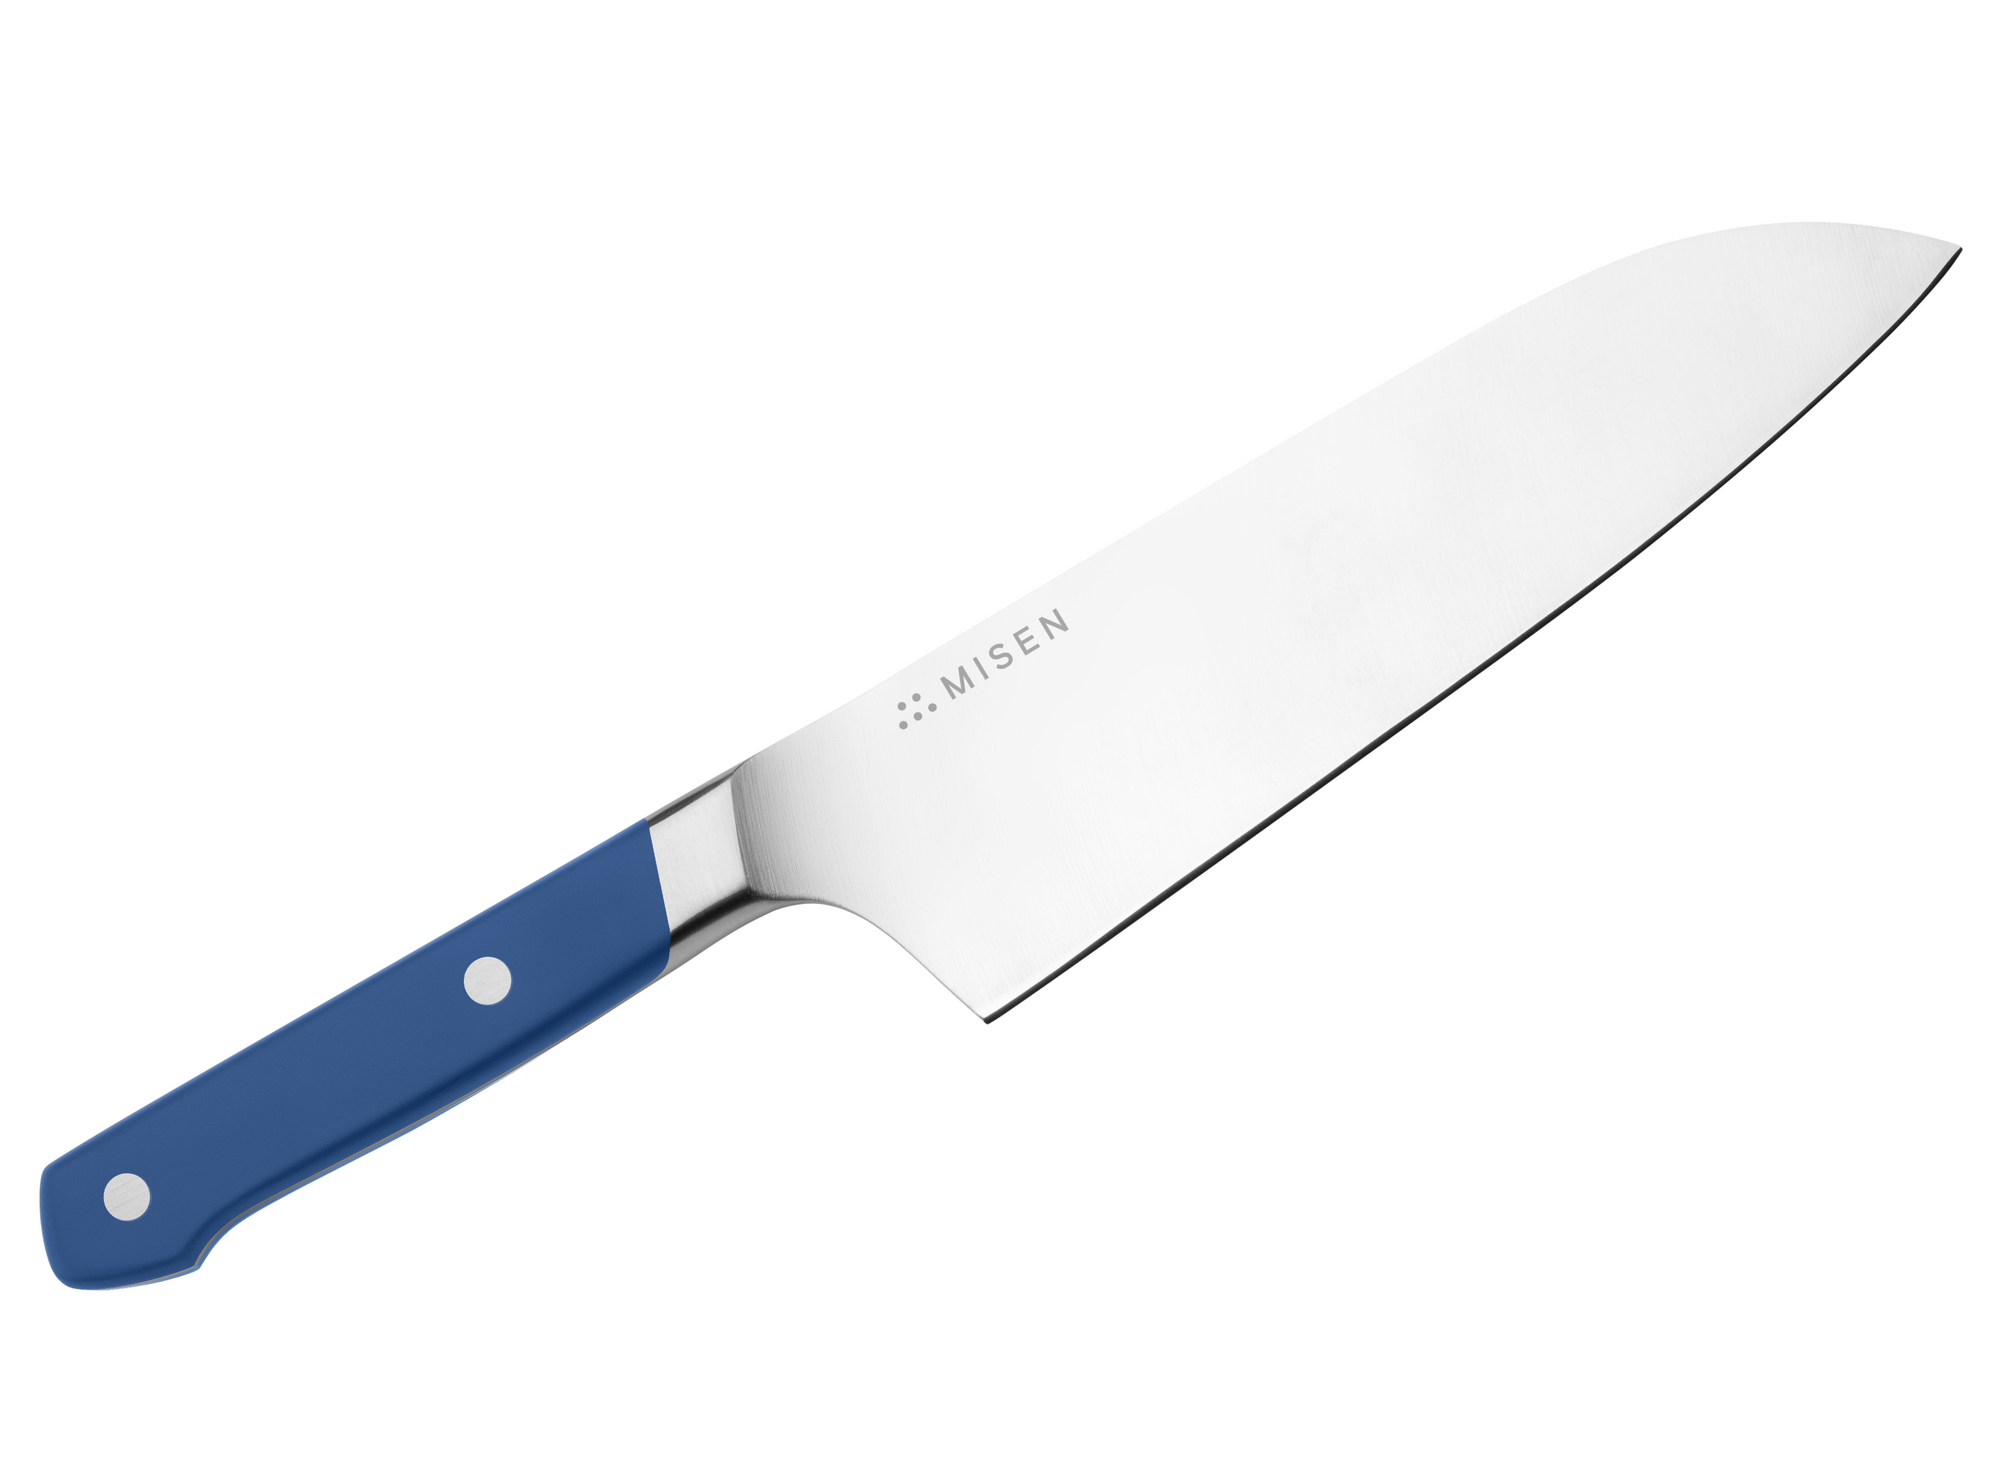 The Best Santoku Knives